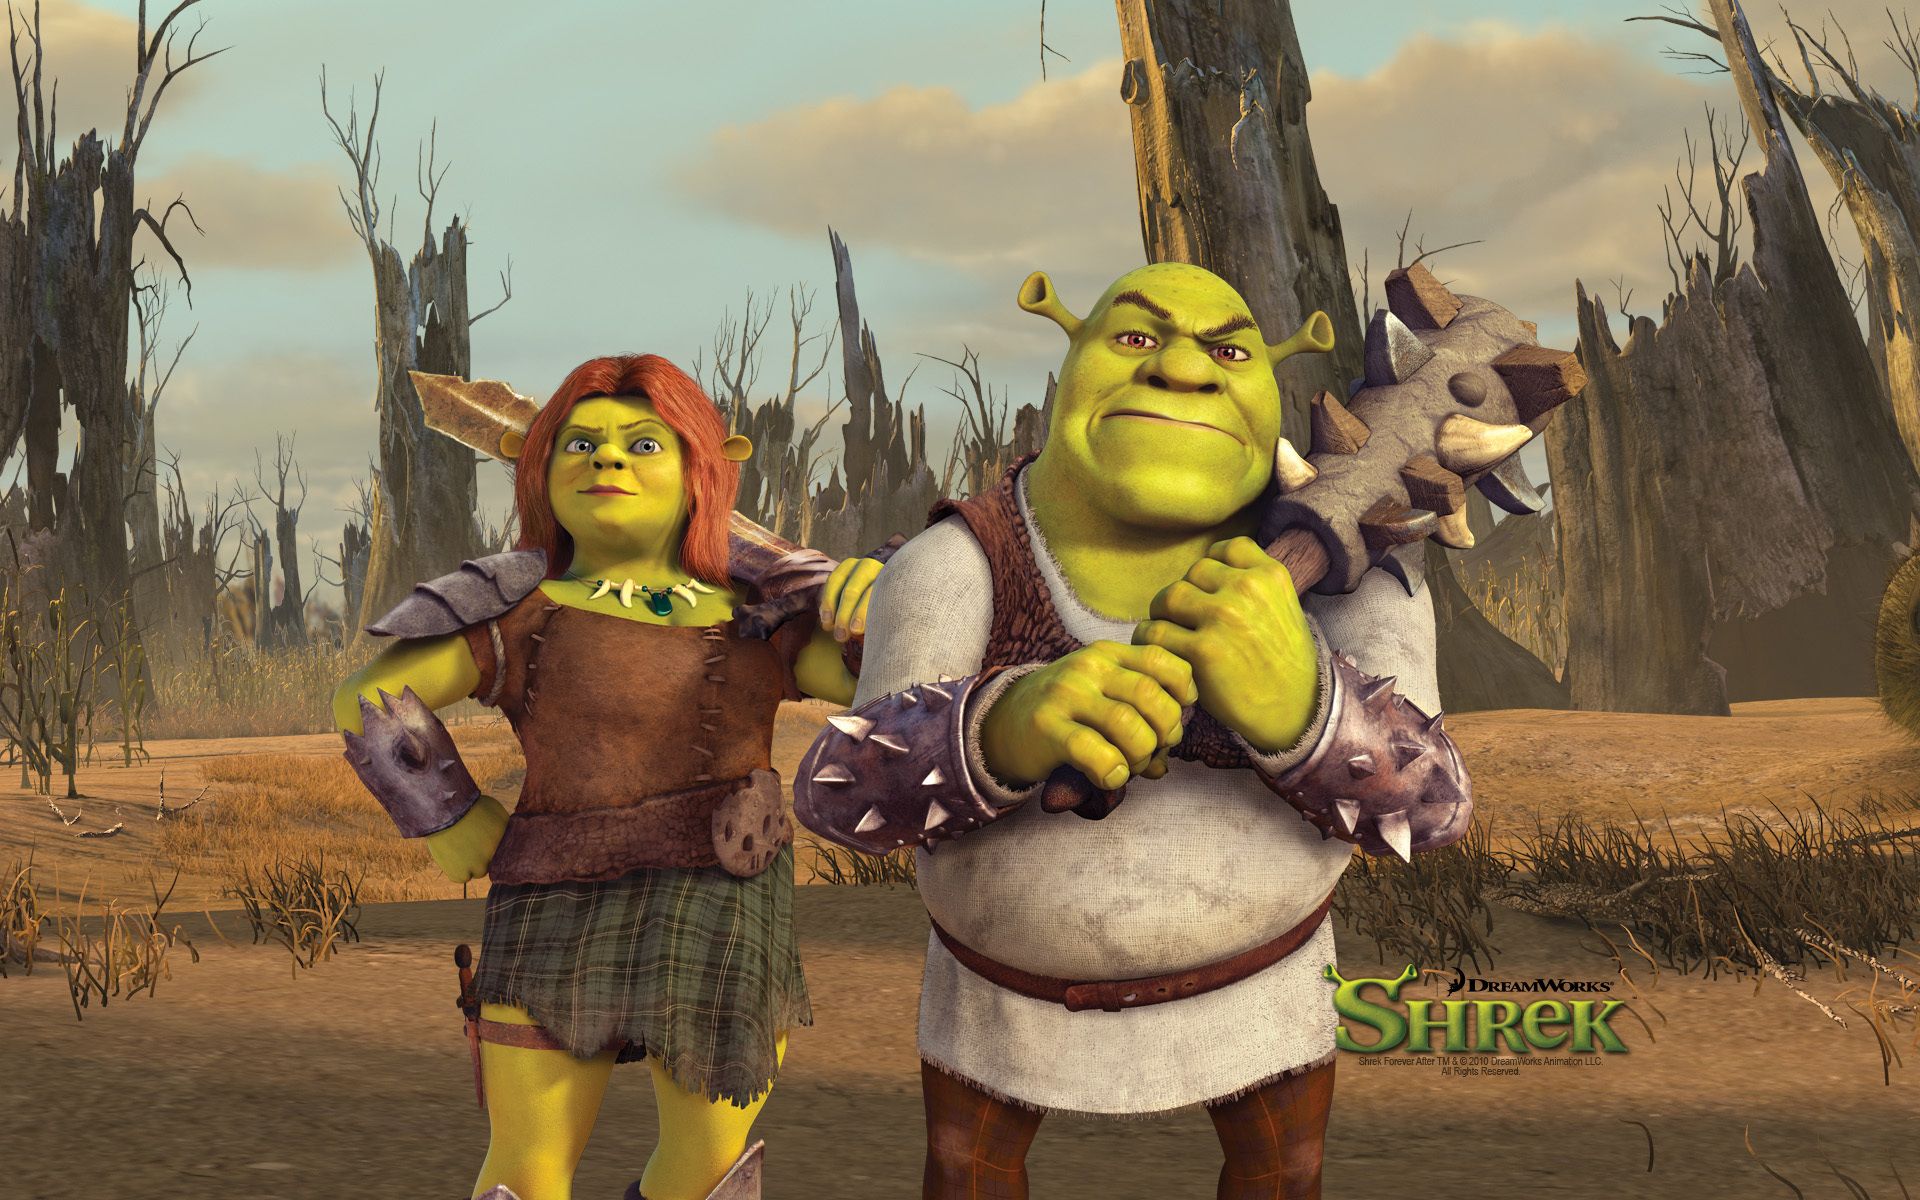 High resolution desktop wallpaper of Shrek, photo of Fiona, a